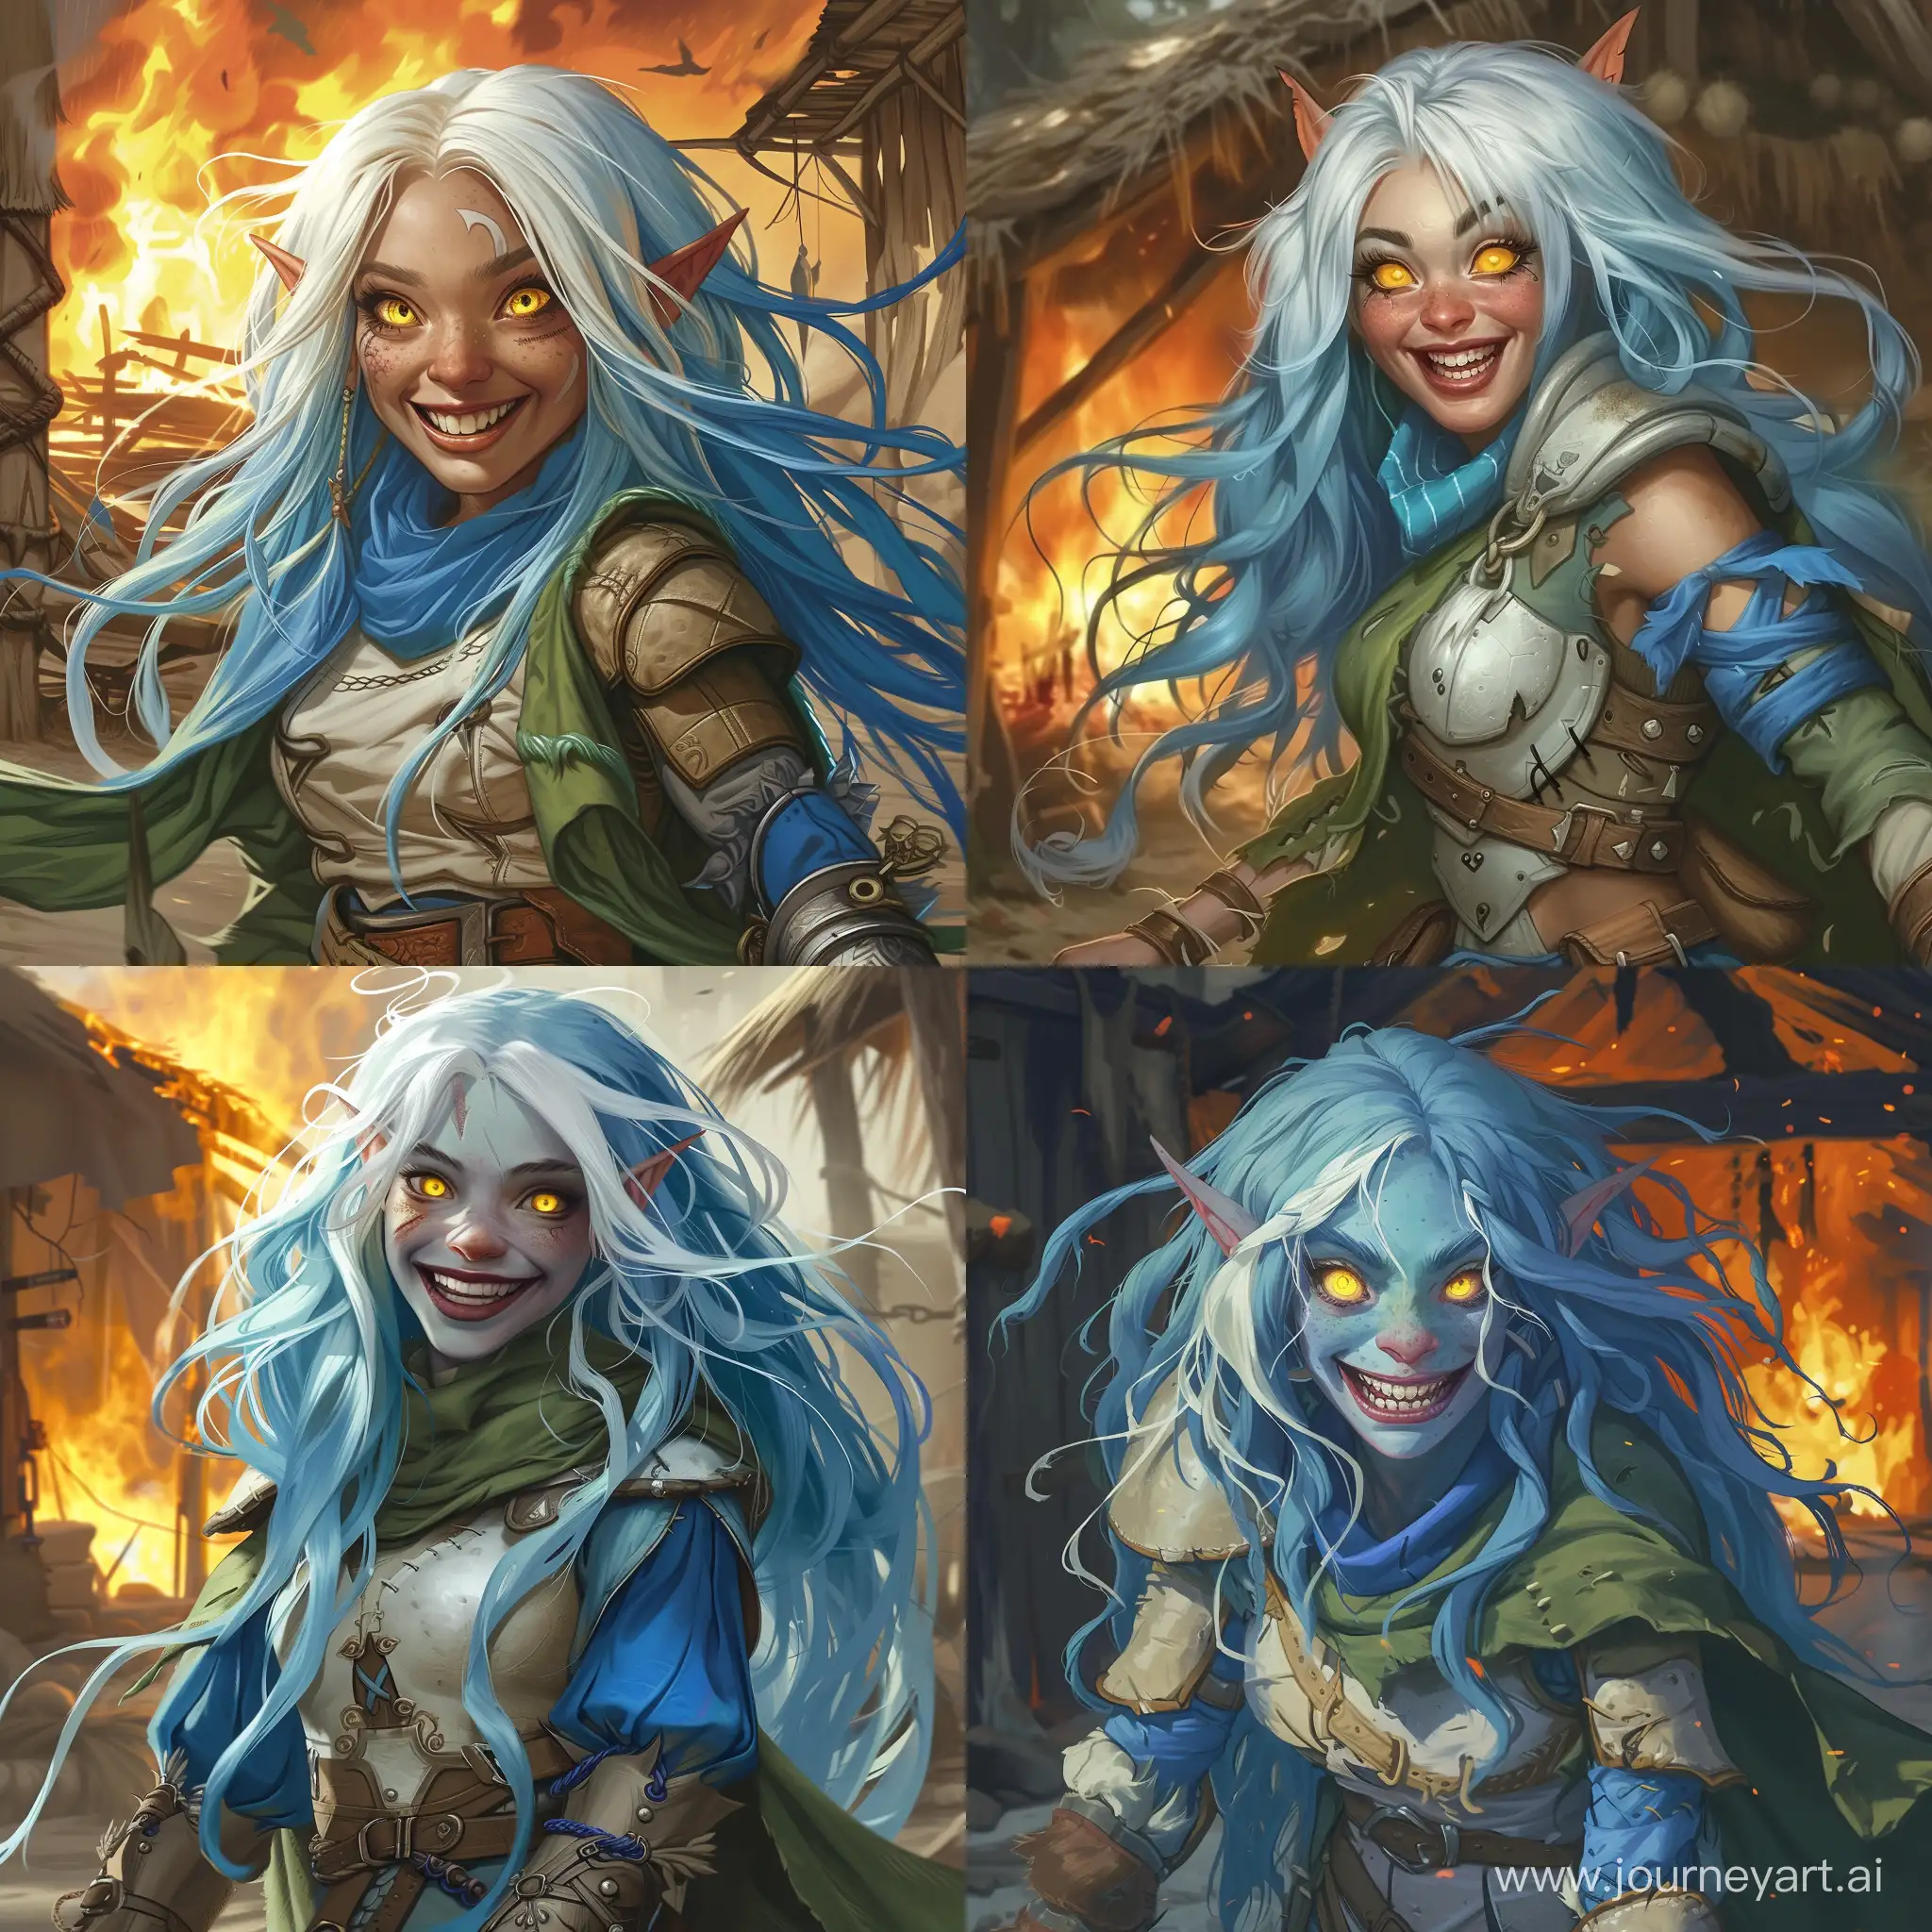 Joyful-HalfElf-Girl-in-Blue-Armor-Amidst-Burning-Hut